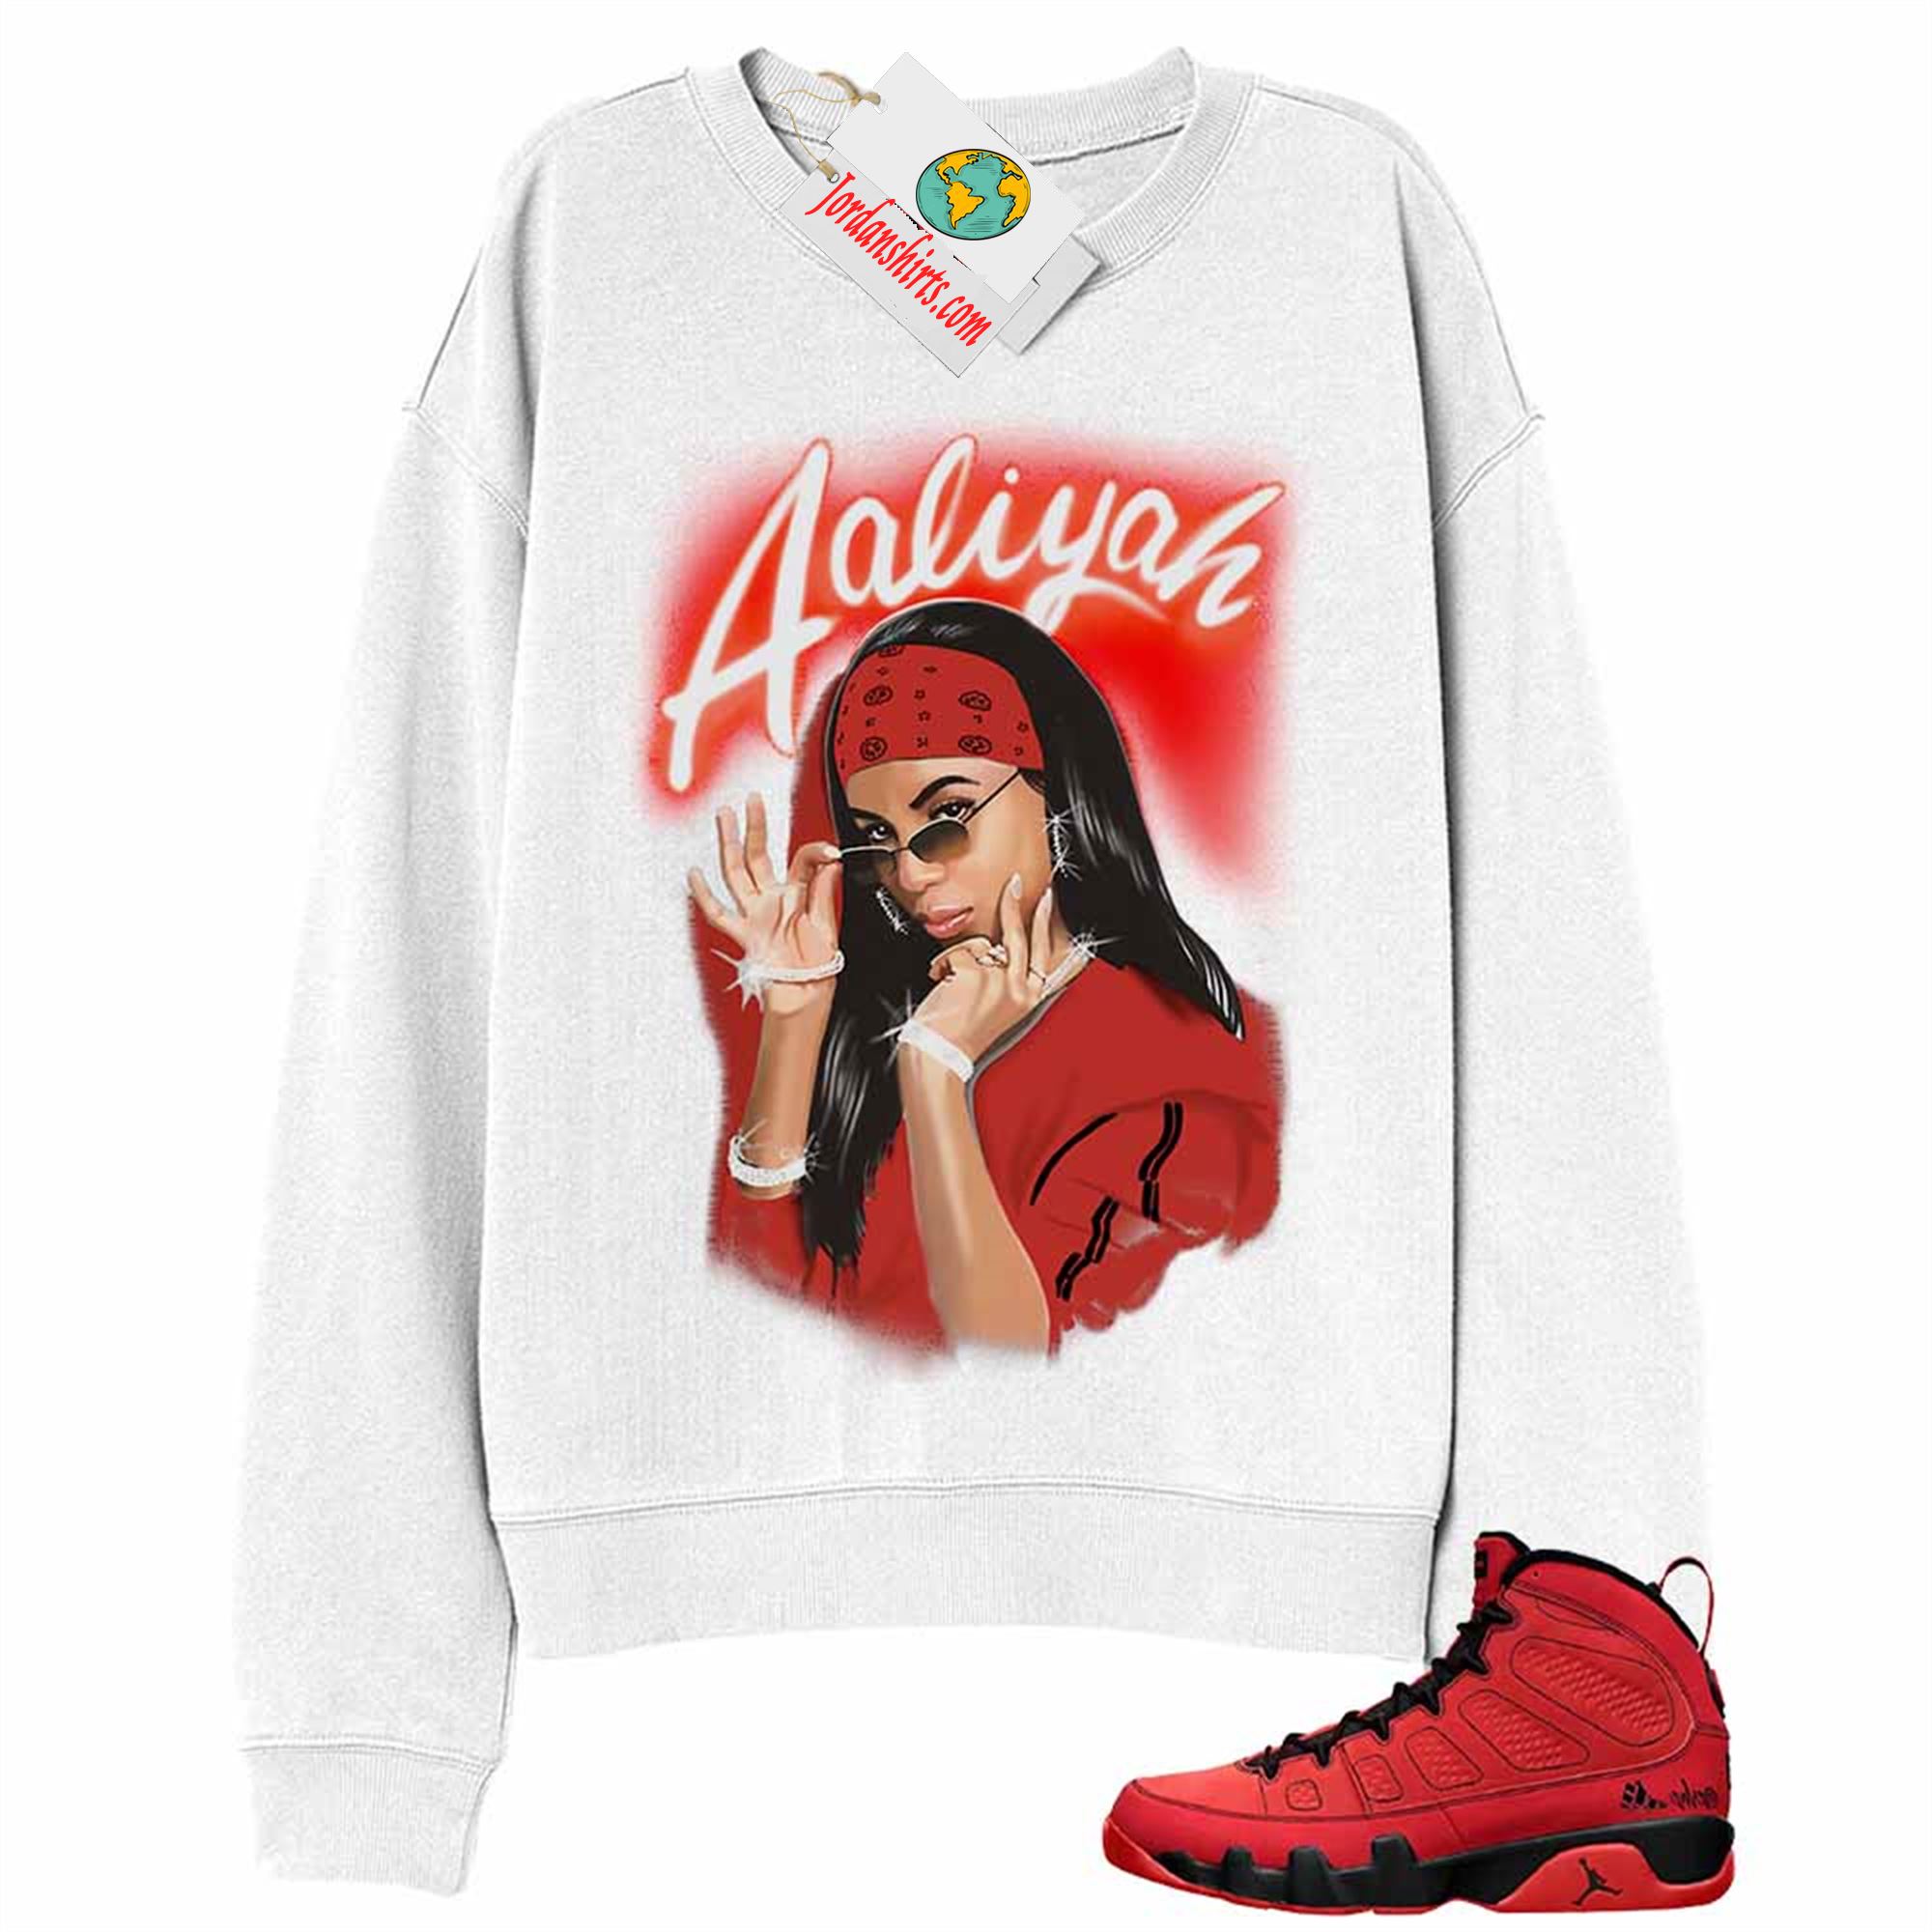 Jordan 9 Sweatshirt, Aaliyah Airbrush White Sweatshirt Air Jordan 9 Chile Red 9s Full Size Up To 5xl